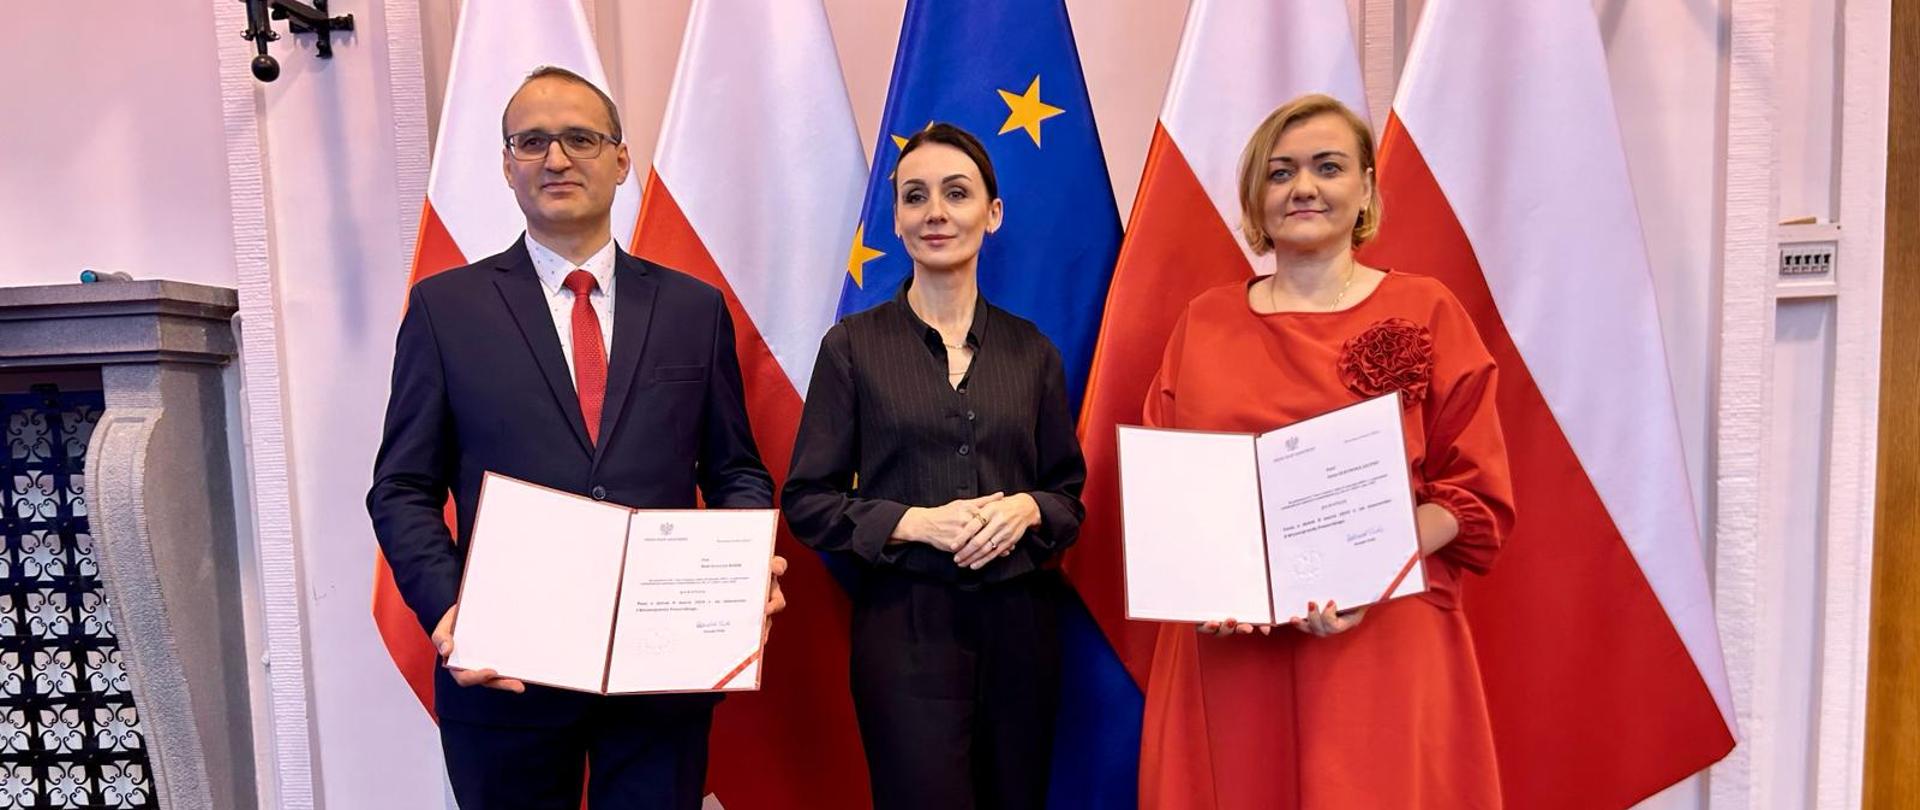 dwie kobiety i mężczyzna stoją w dużej sali na tle flag polskich i unijnej. trzymają w dłoniach teczki z nominacjami na wicewojewodów